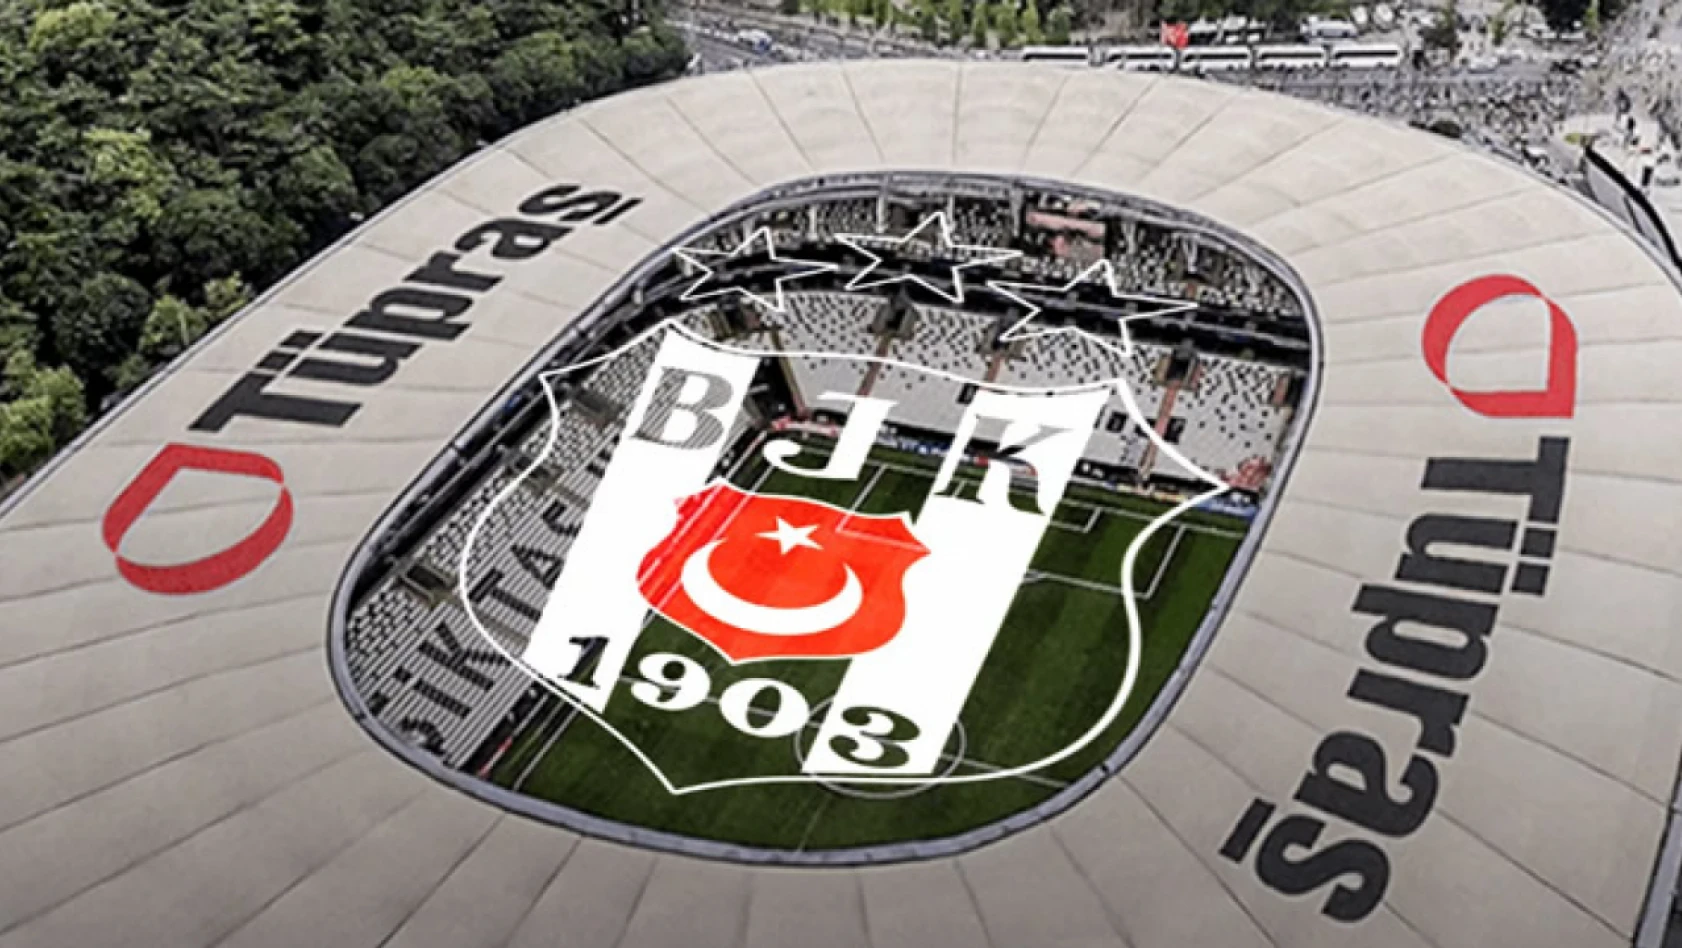 Beşiktaş'tan Tüpraş ile dev anlaşma! Stadyum isim hakkı için sponsorluk açıklandı!